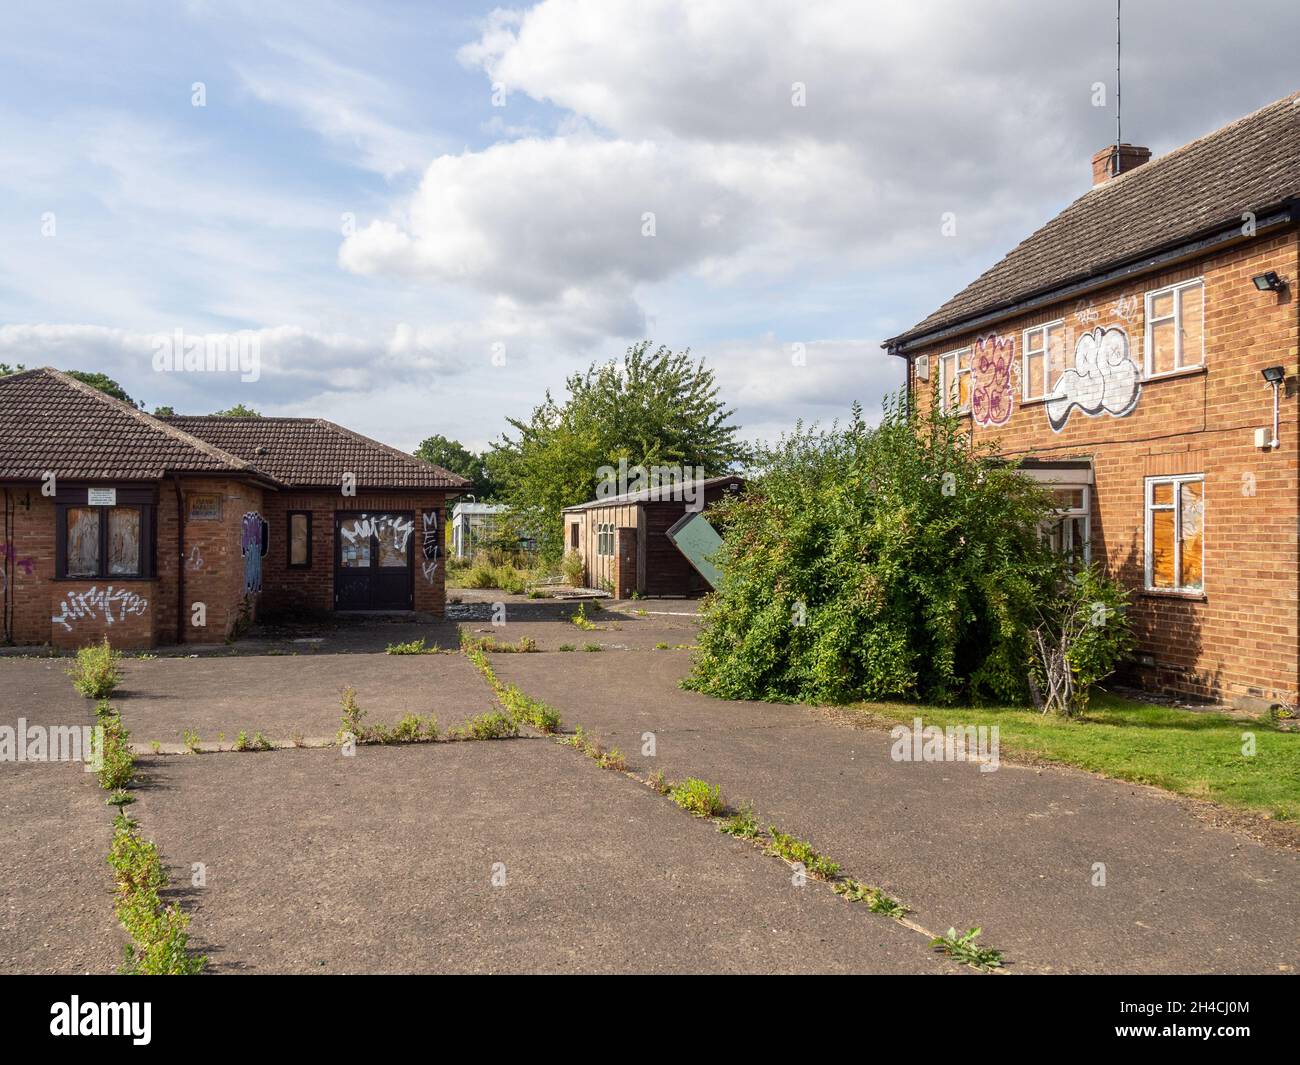 Il sito del Young's Garden Center ora abbandonato e trascurato, Blisworth, Northamptonshire, Regno Unito; chiuso nel 2015 a seguito della morte del proprietario. Foto Stock